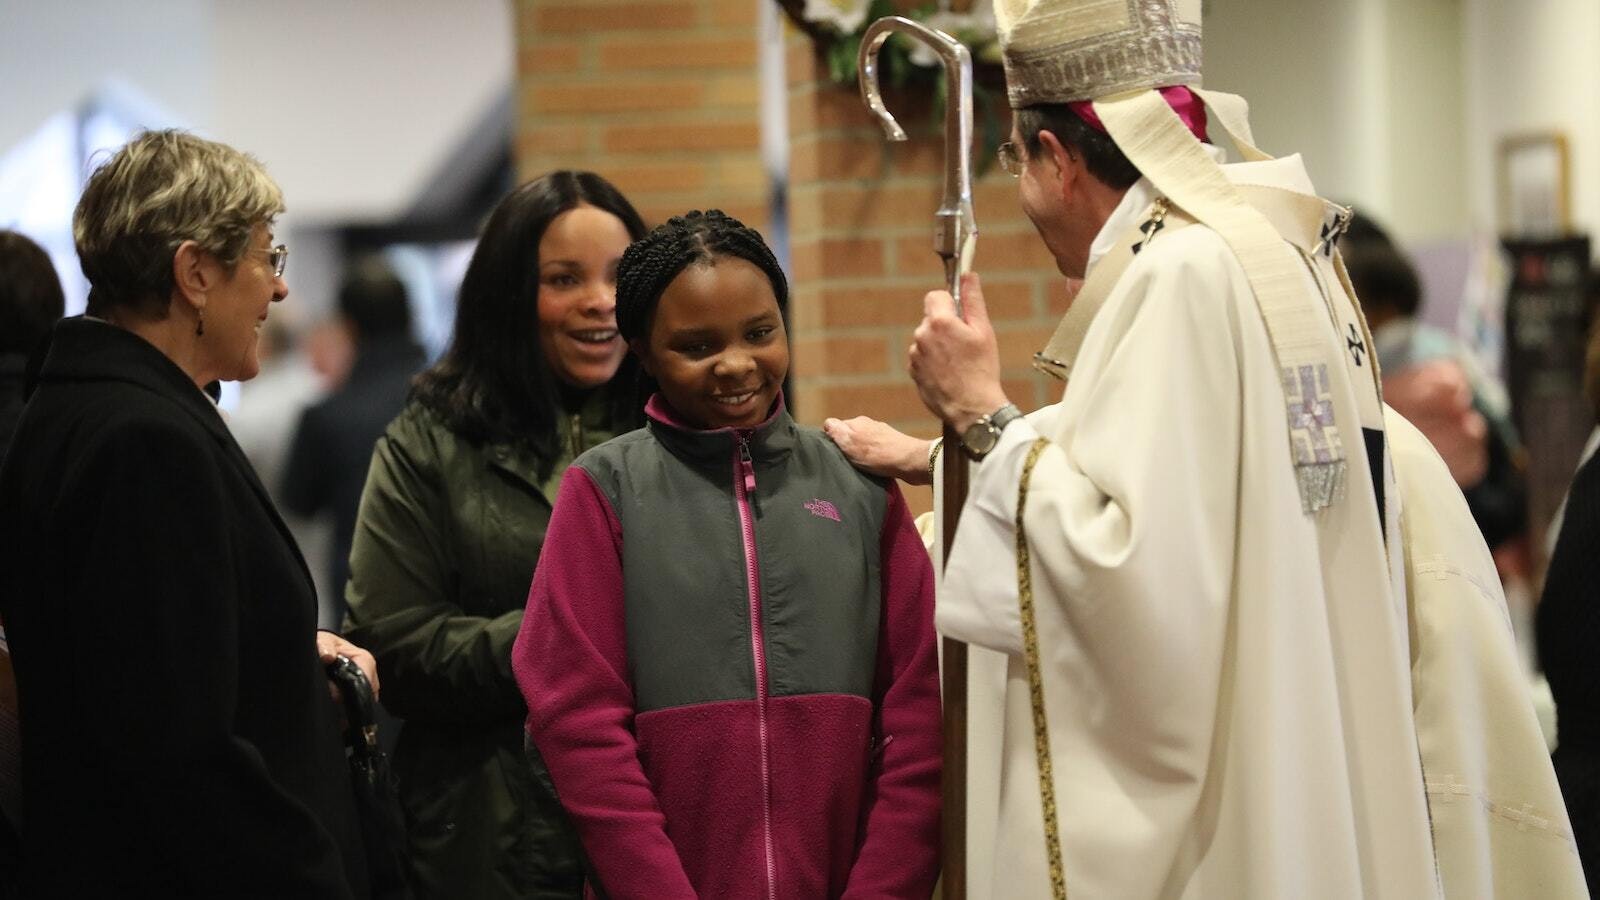 El Arzobispo Vigneron saluda a una joven feligresa de la St. Fabian Parish en Farmington Hills durante una visita a la parroquia el 15 de abril de 2018. (Naomi Vrazo | Foto de archivo de Detroit Catholic)